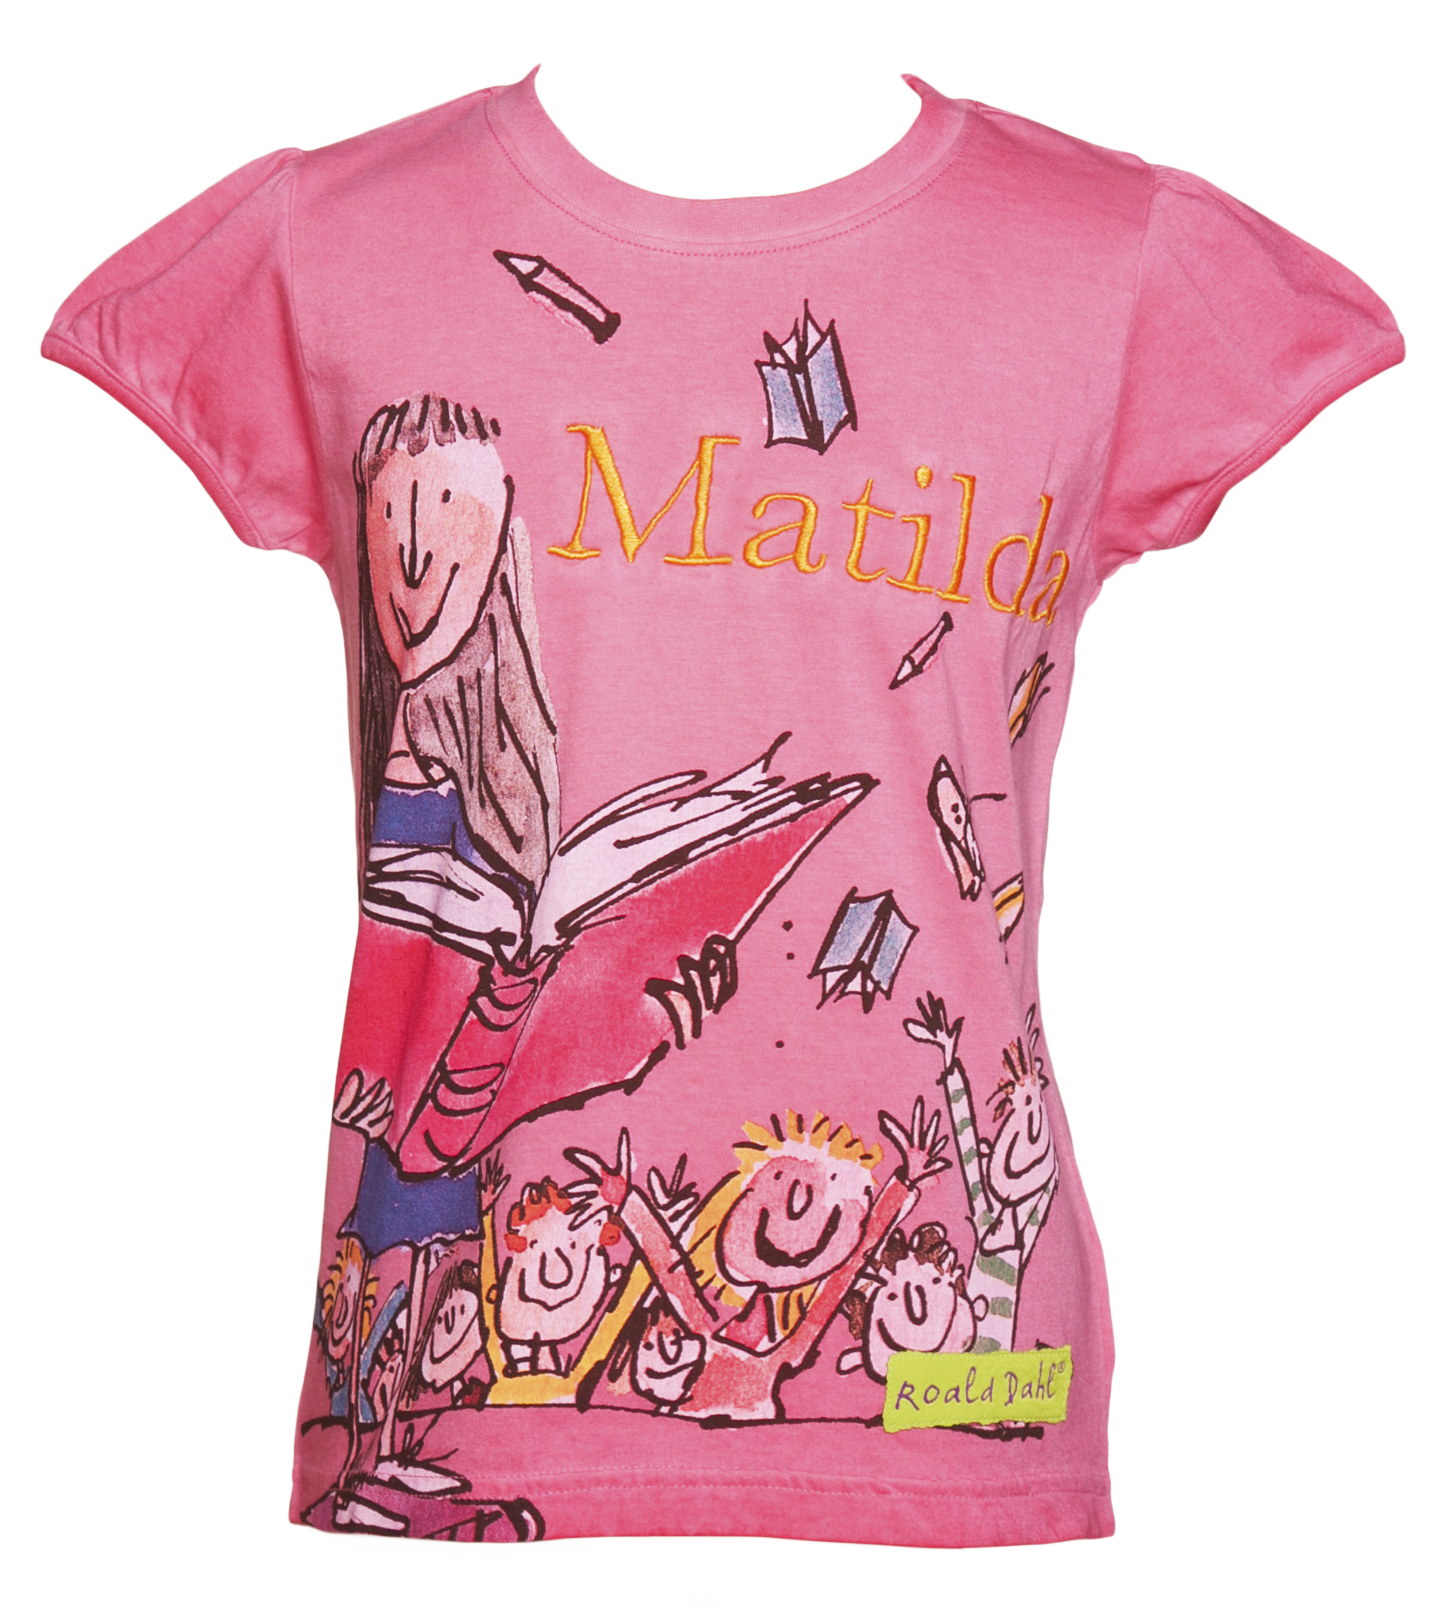 Kids Pink Matilda Roald Dahl T-Shirt from Fabric